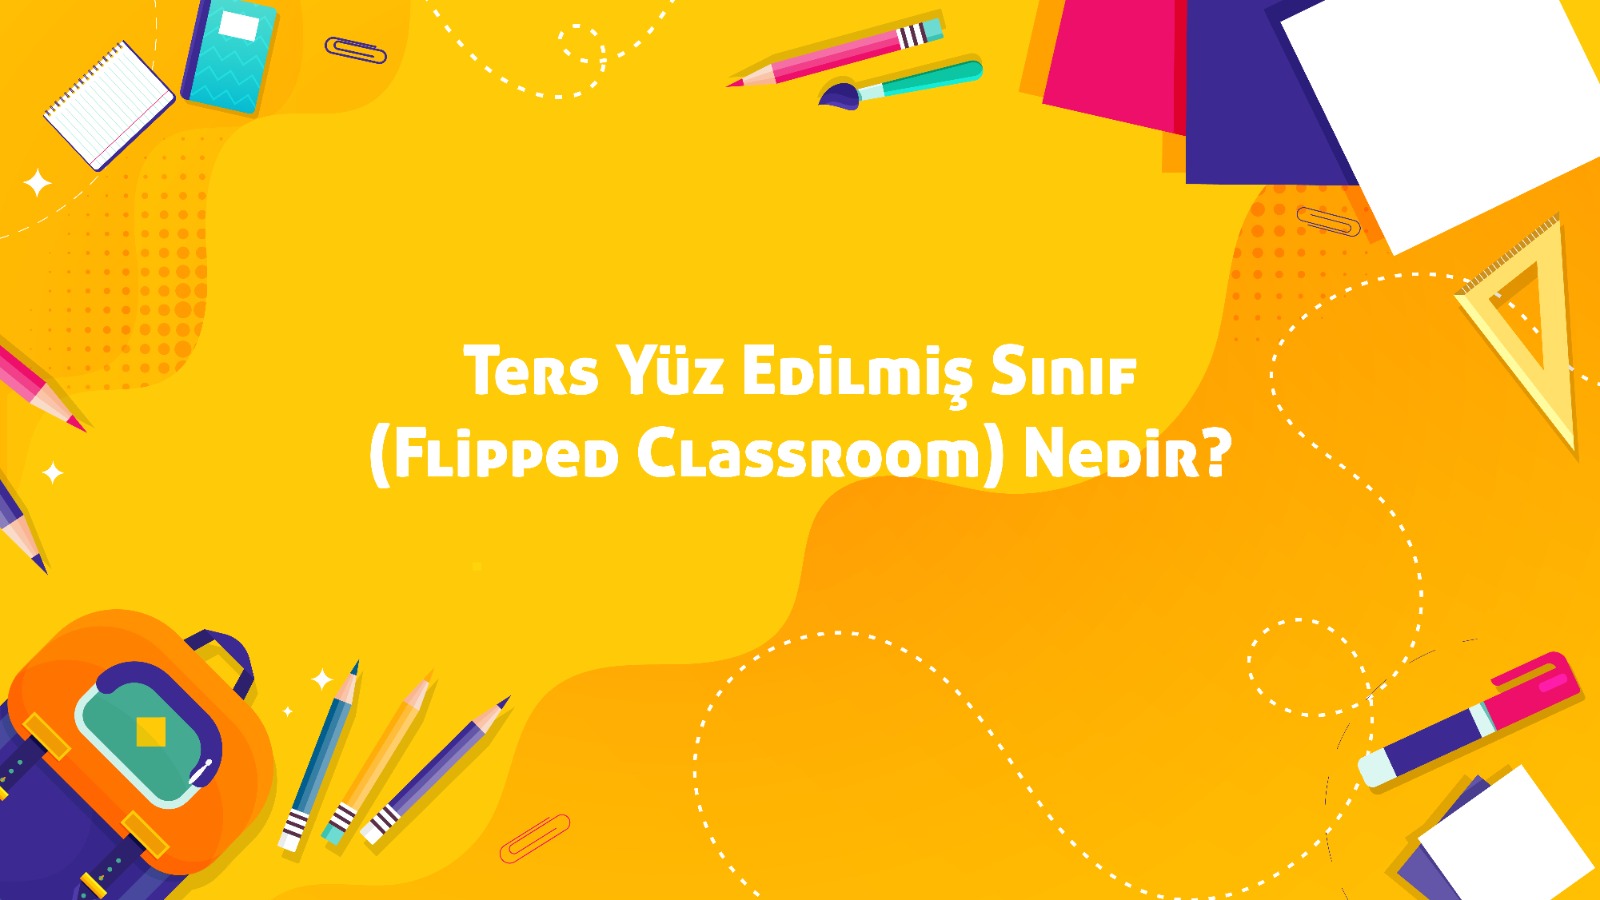 Ters Yüz Edilmiş Sınıf (Flipped Classroom) Nedir?